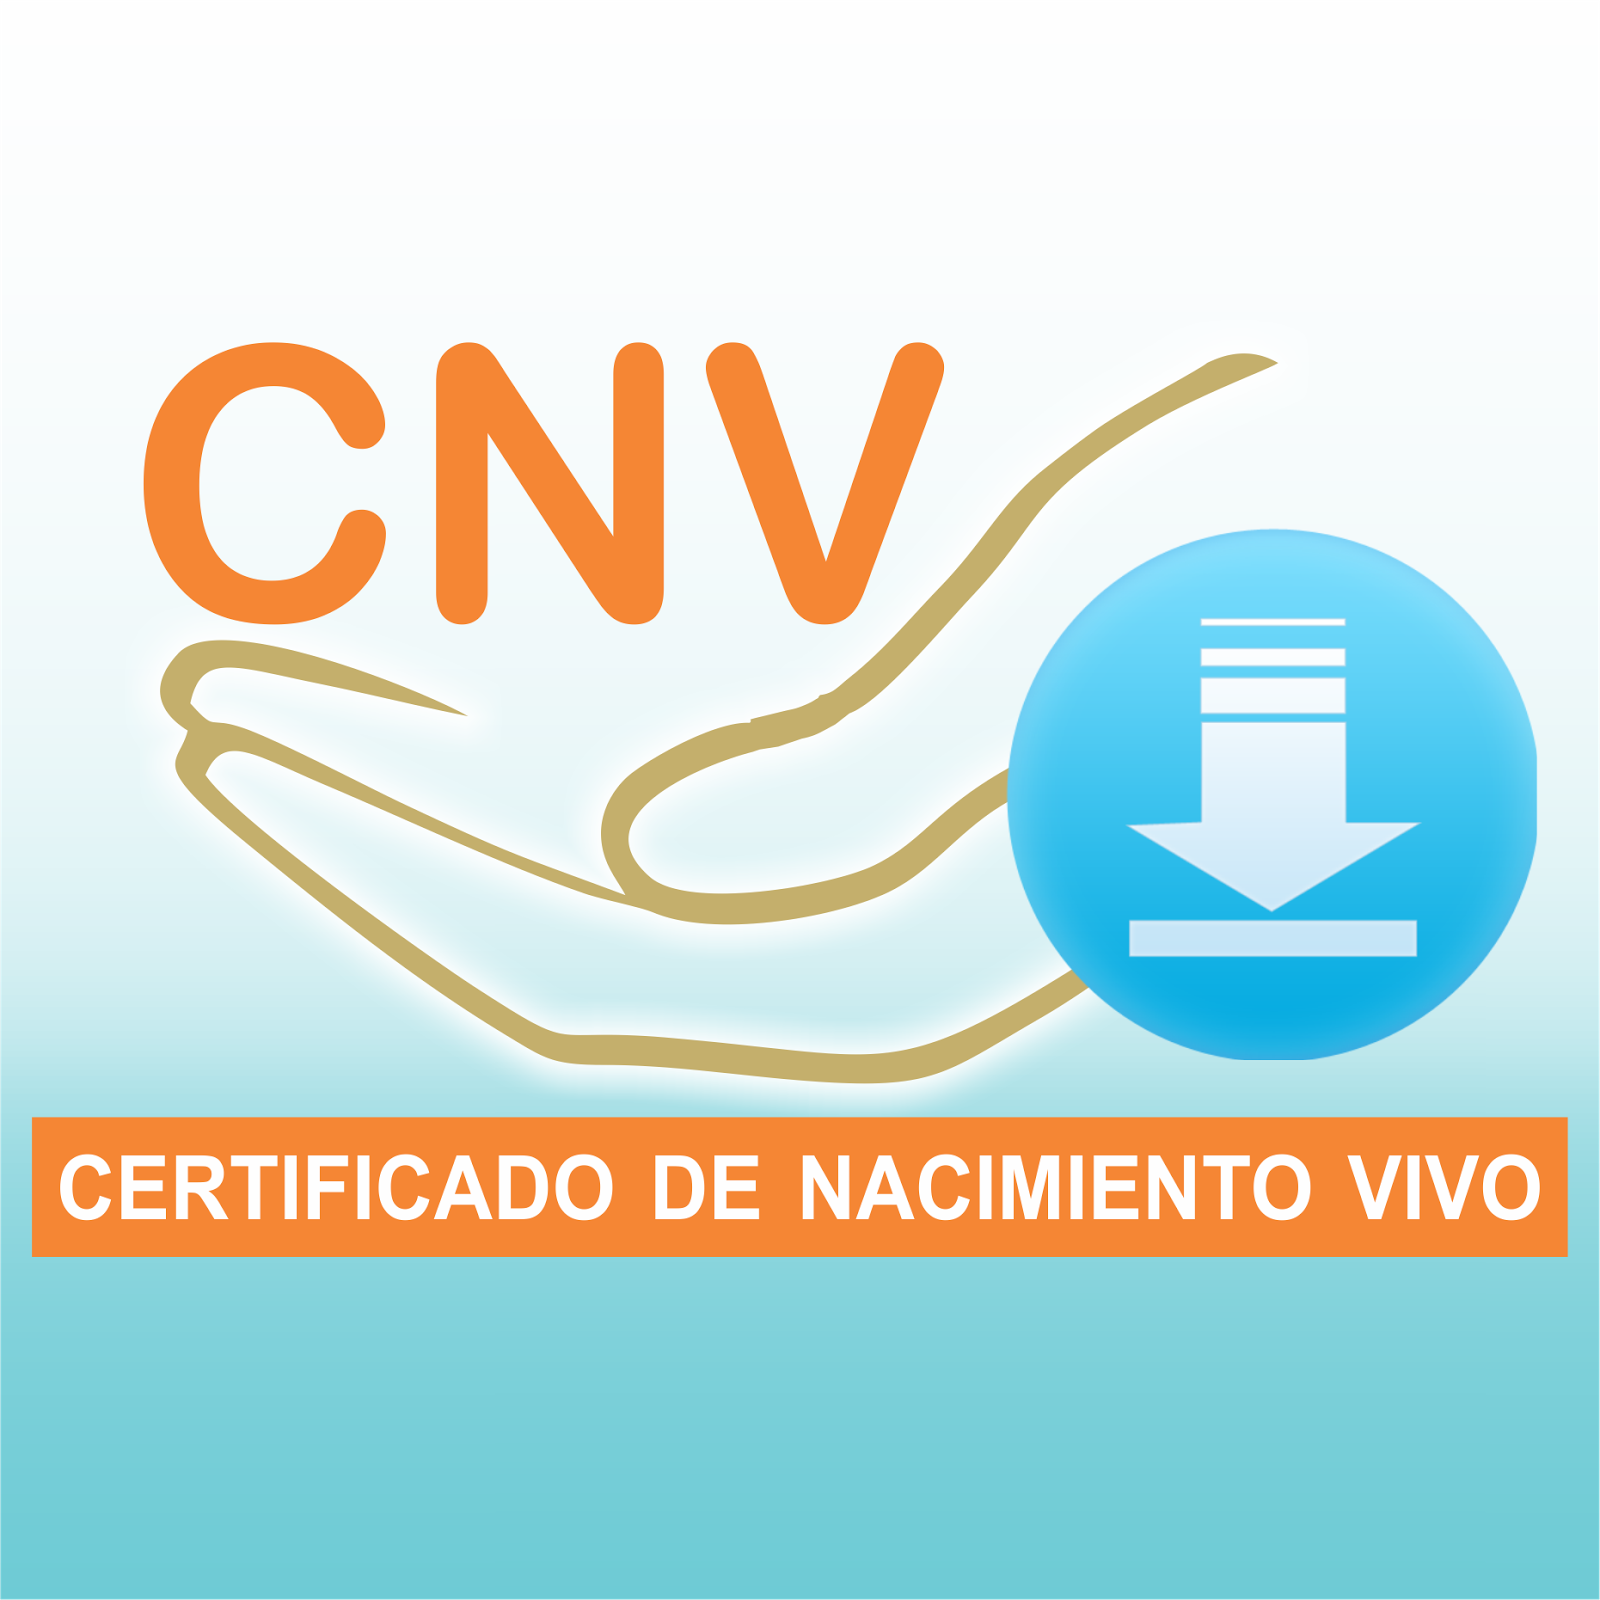 CNV ACTUALIZADA AL  30-09-2017